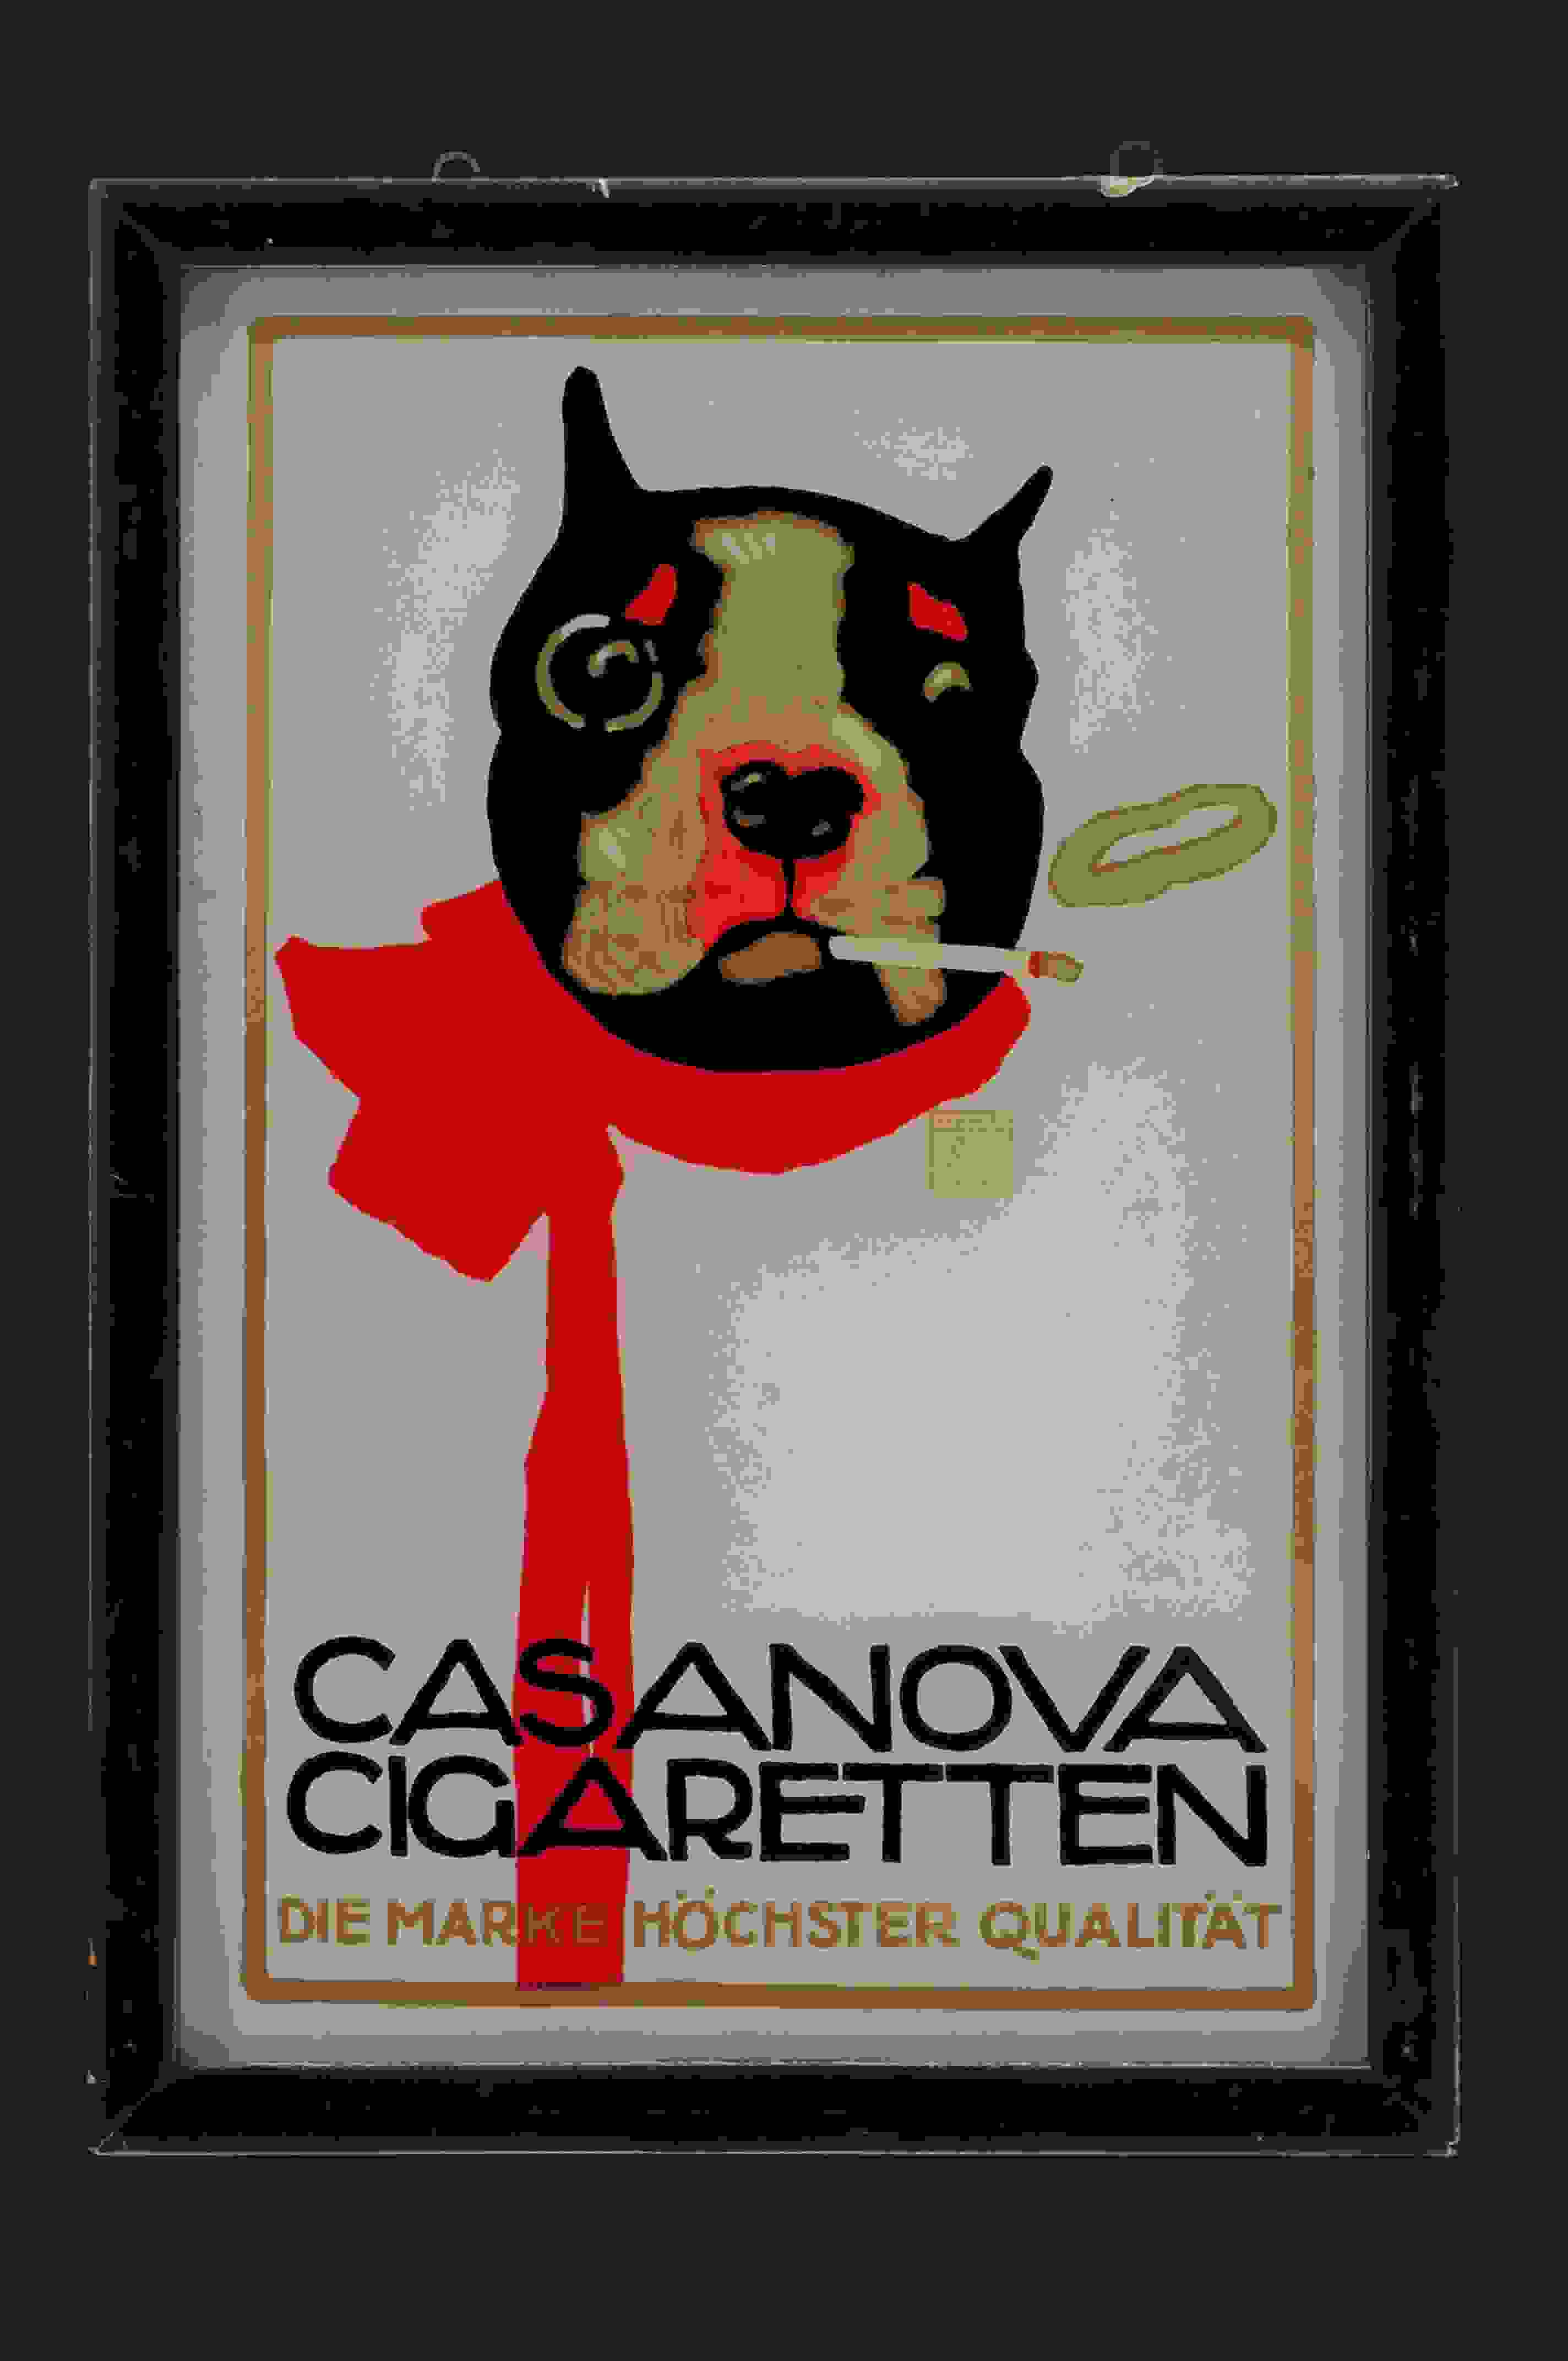 Casanova Cigaretten 